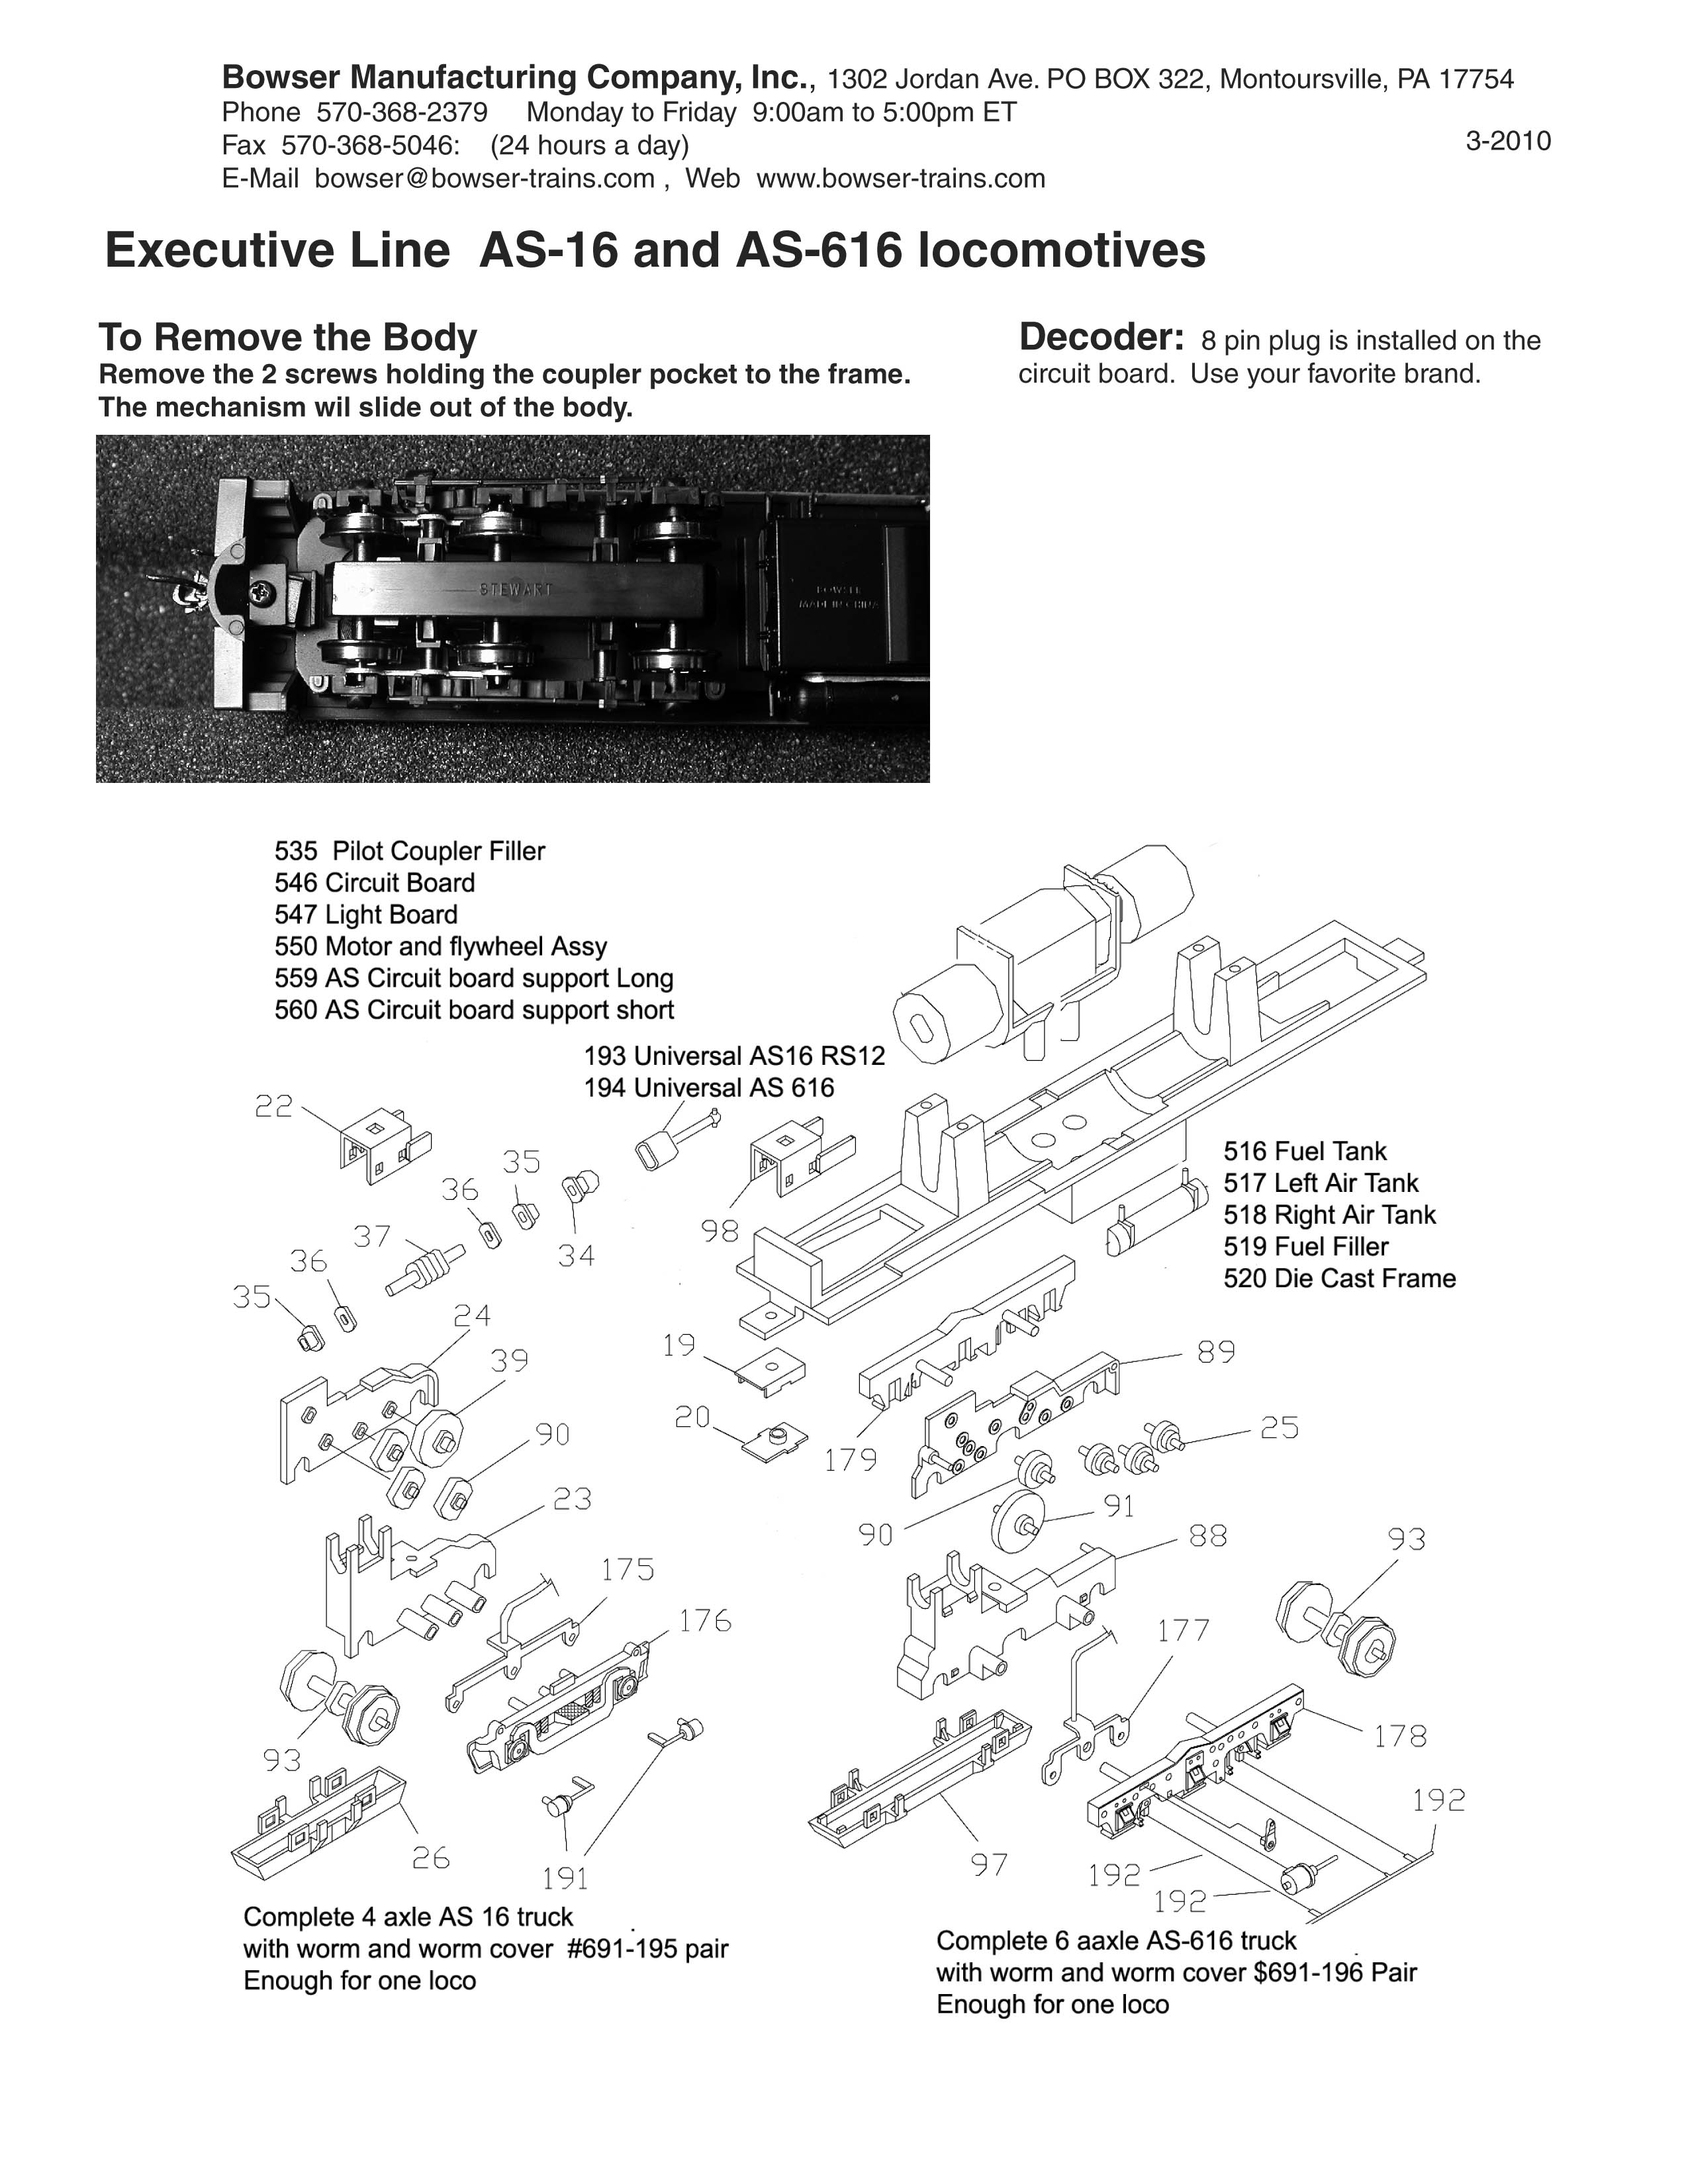 Bowser Parts #256073 PK.12_ 2 56 X  7/16 FILL HD   SCREWS 